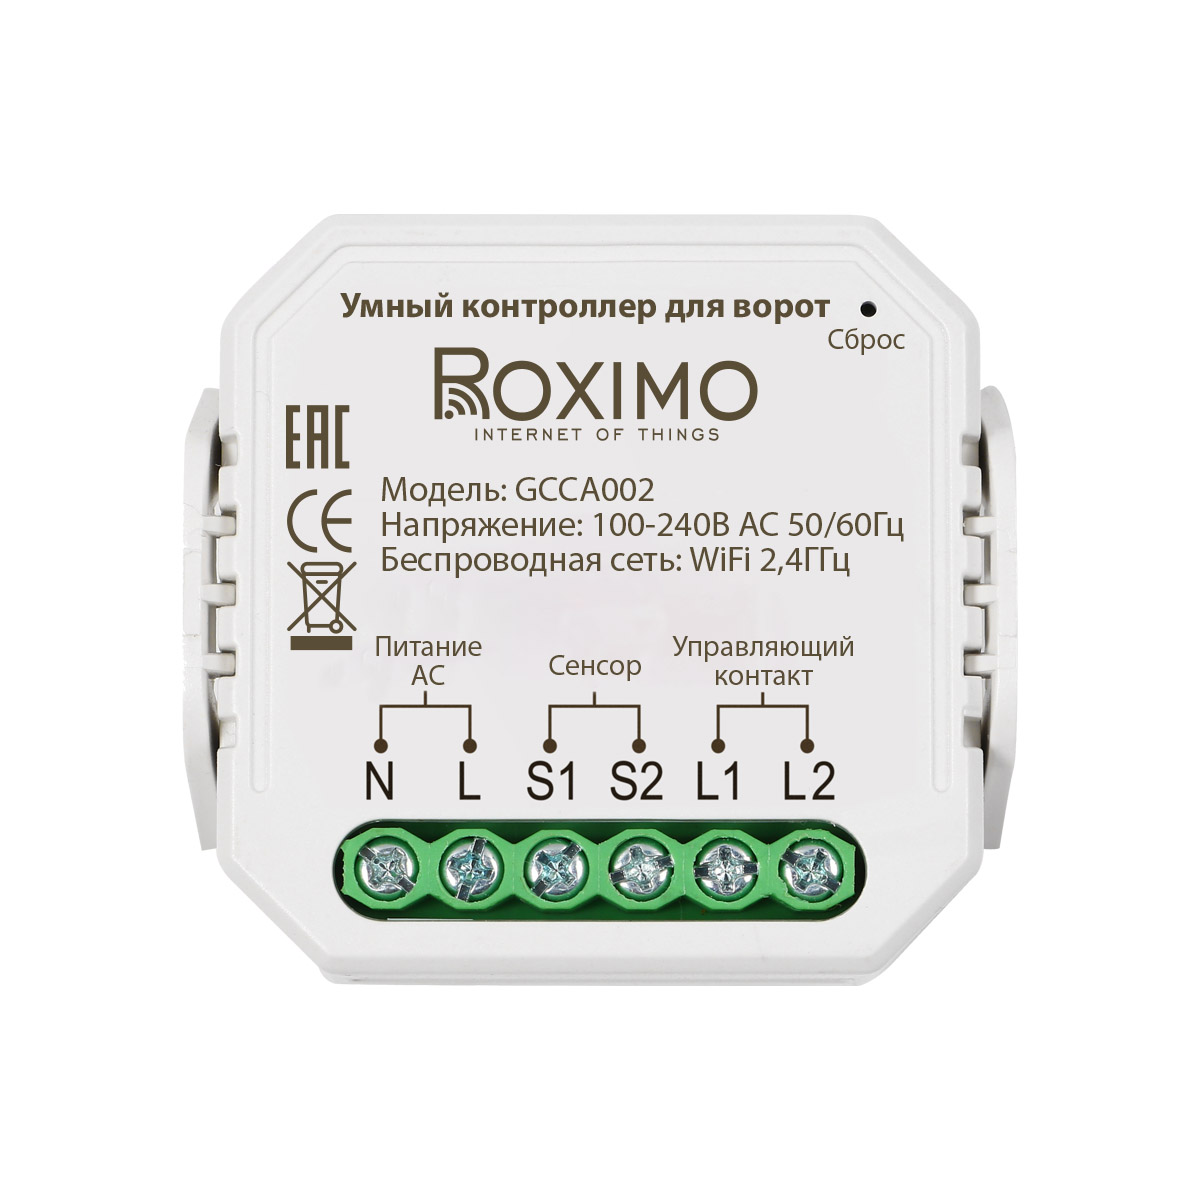 Умный контроллер для ворот ROXIMO GCCA002 умный модуль roximo